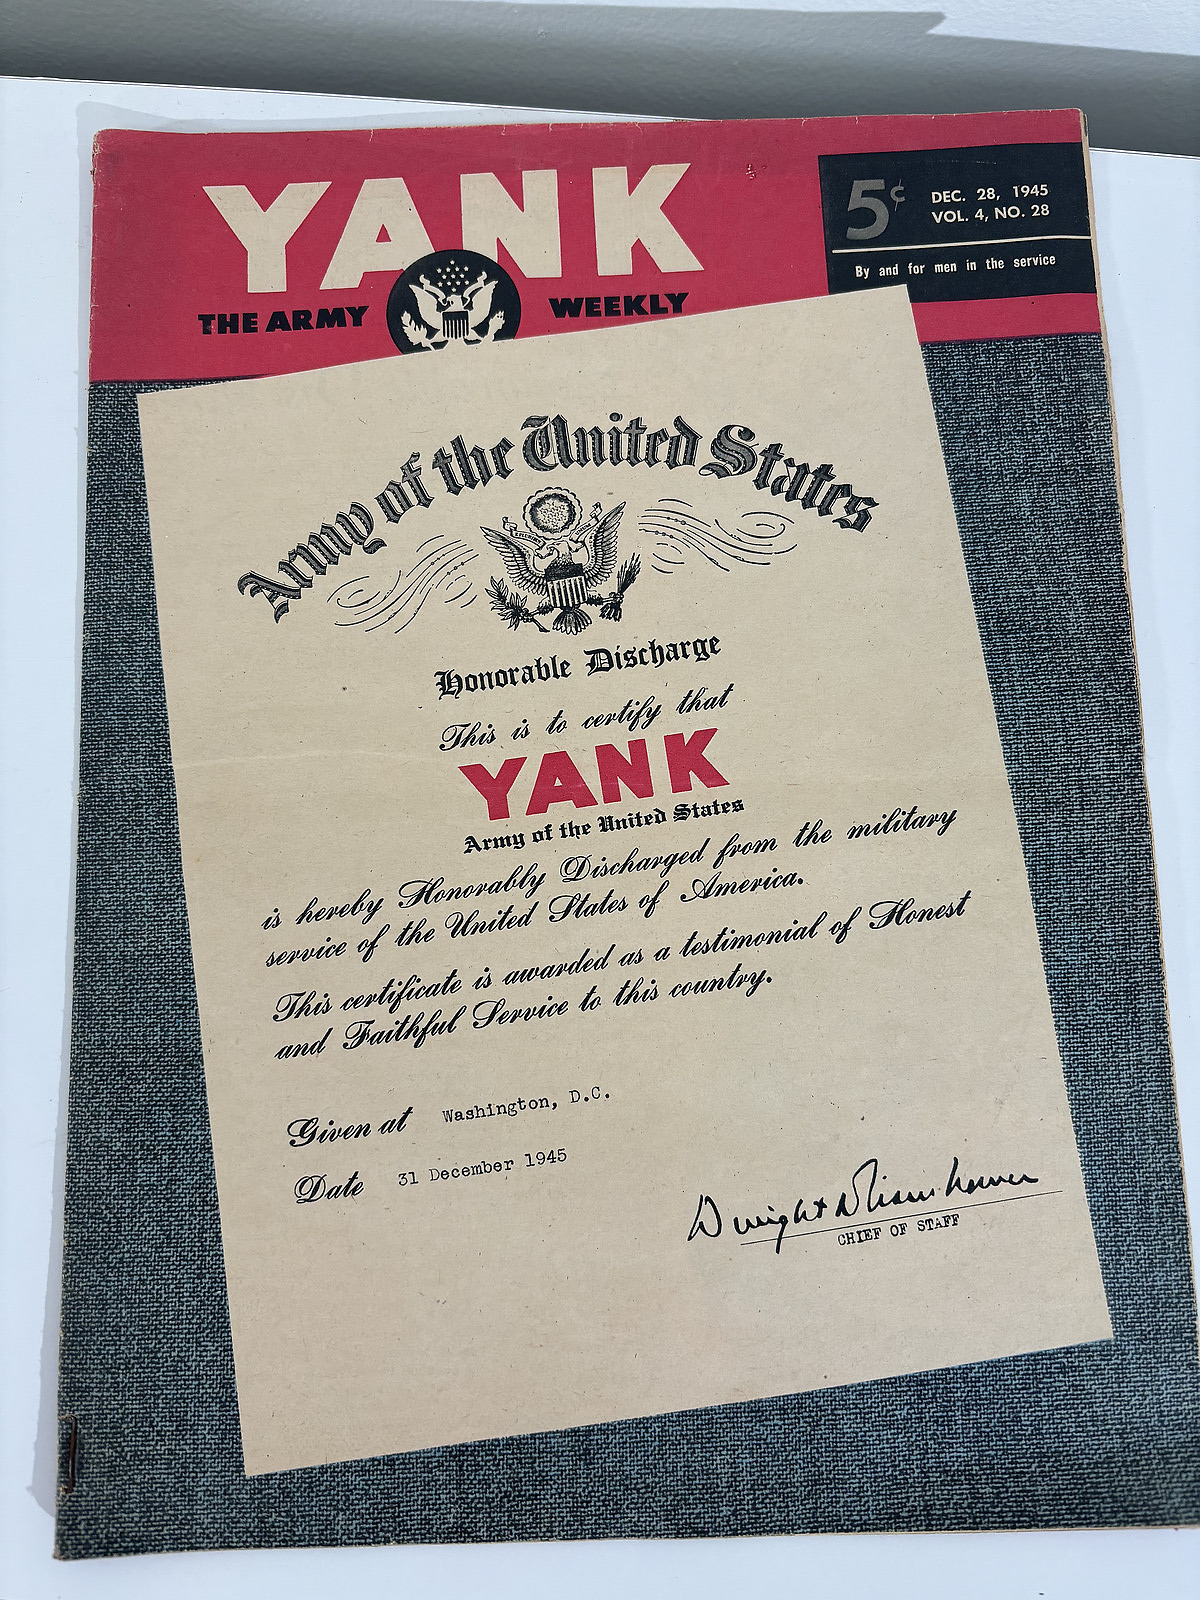 WWII era Yank Magazine 1945 Dec. 28, 1945, World War 2 vintage publication